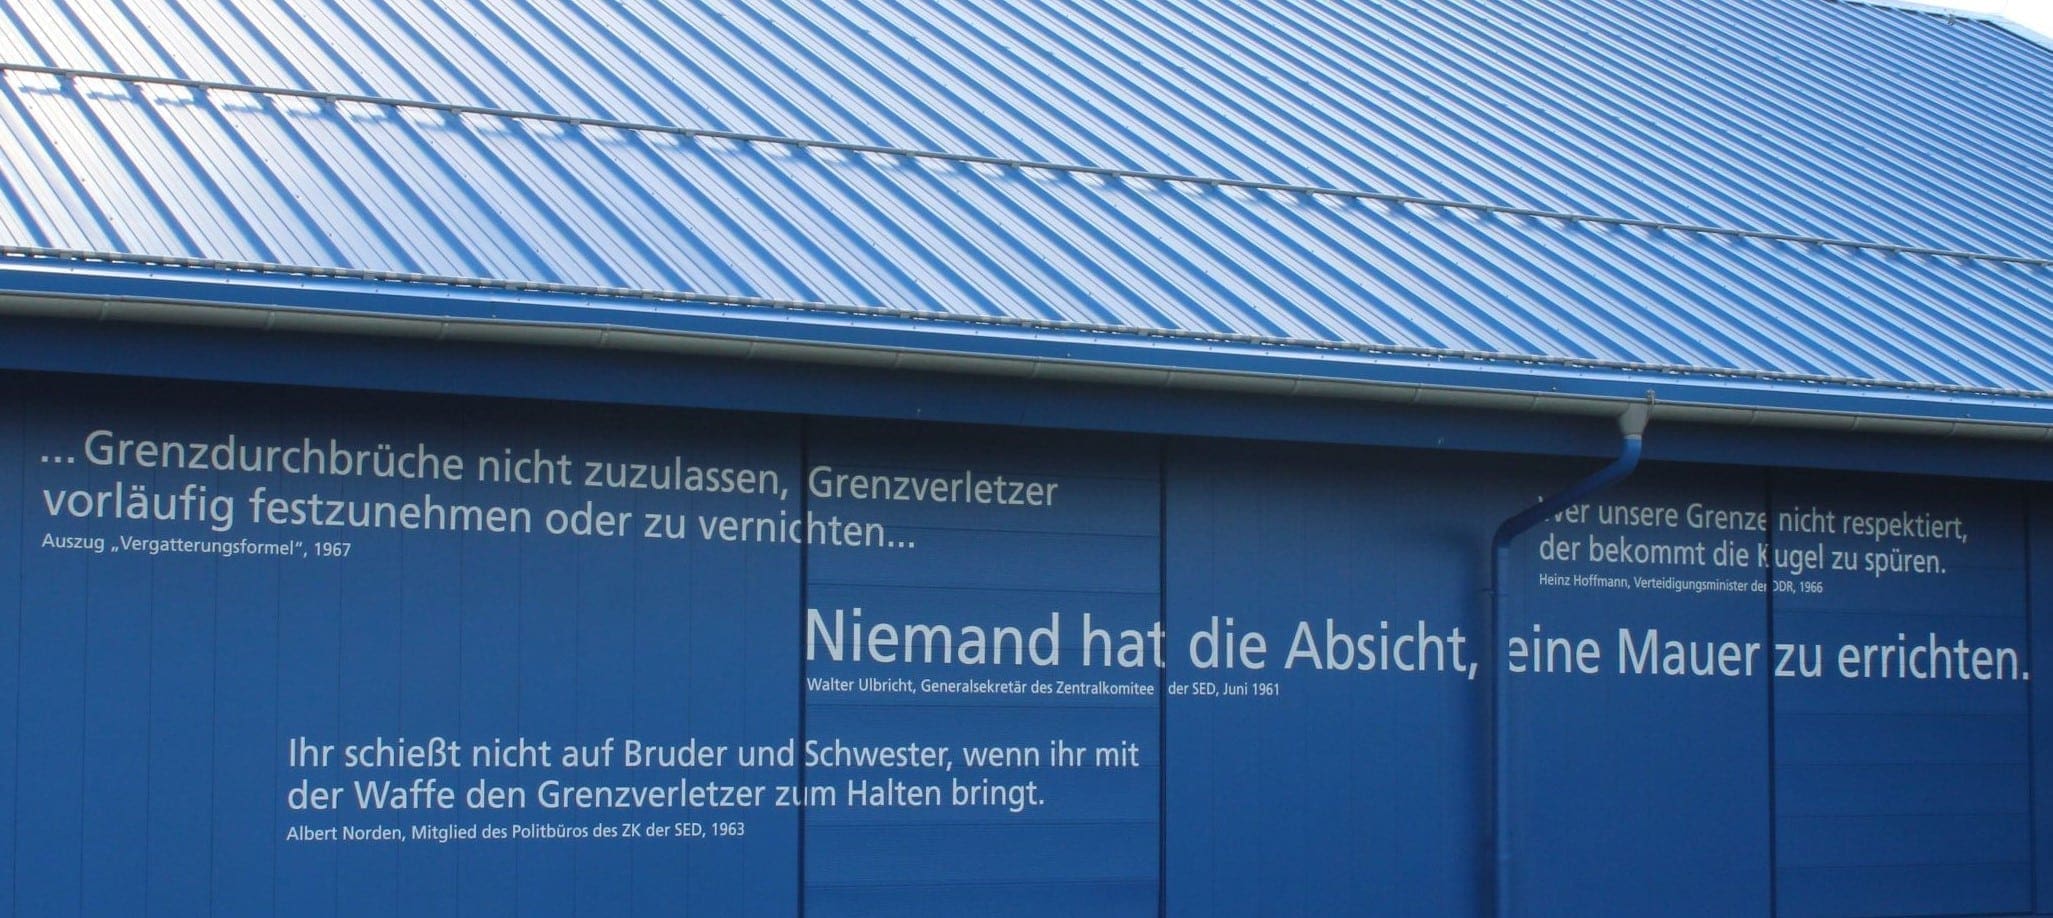 „Niemand hat die Absicht…“: Zitate und Aussagen, die im Zusammenhang mit der Innerdeutschen Grenze stehen, prangern als Mahnung an der Außenfassade am Haus auf der Grenze.